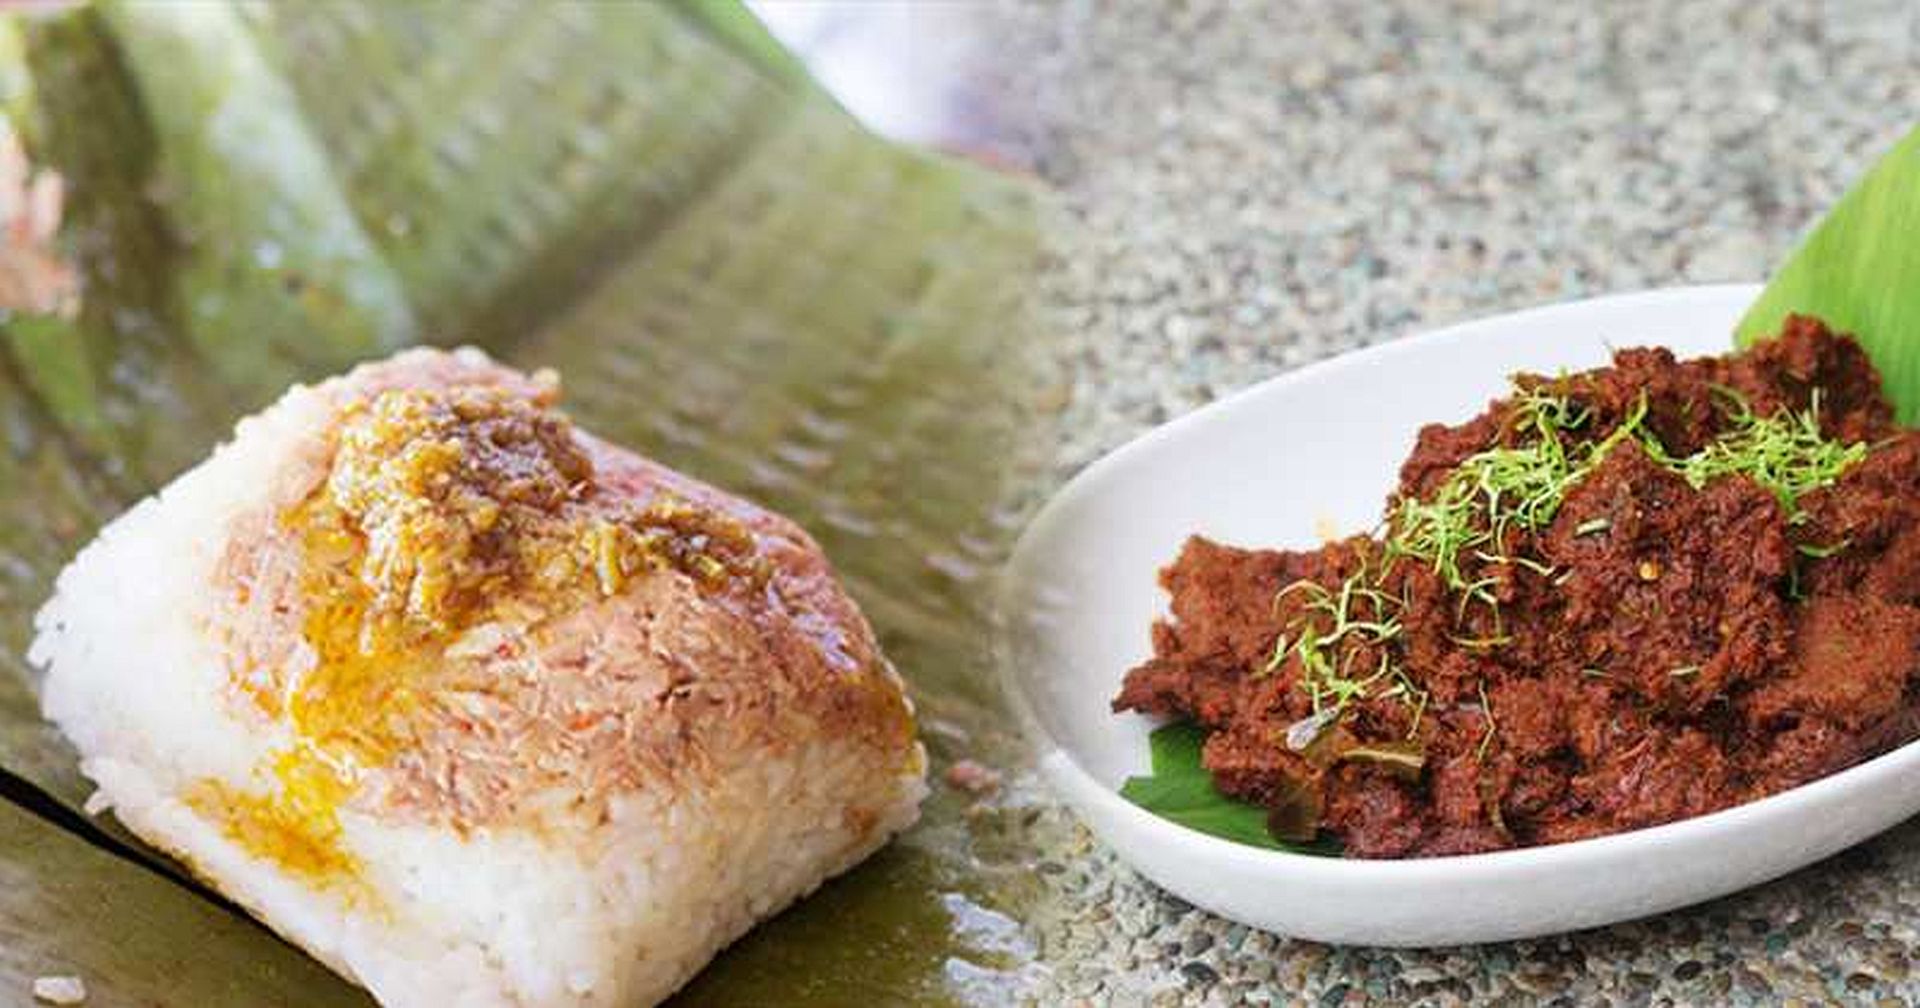 PHILIPPINEN MAGAZIN - IDEEN für REISEZIELE/AUSFLÜGE - TOURISMUS-NACHRICHTEN - PH führt Mindanao und Halal-Küche auf dem ausländischen Markt ein